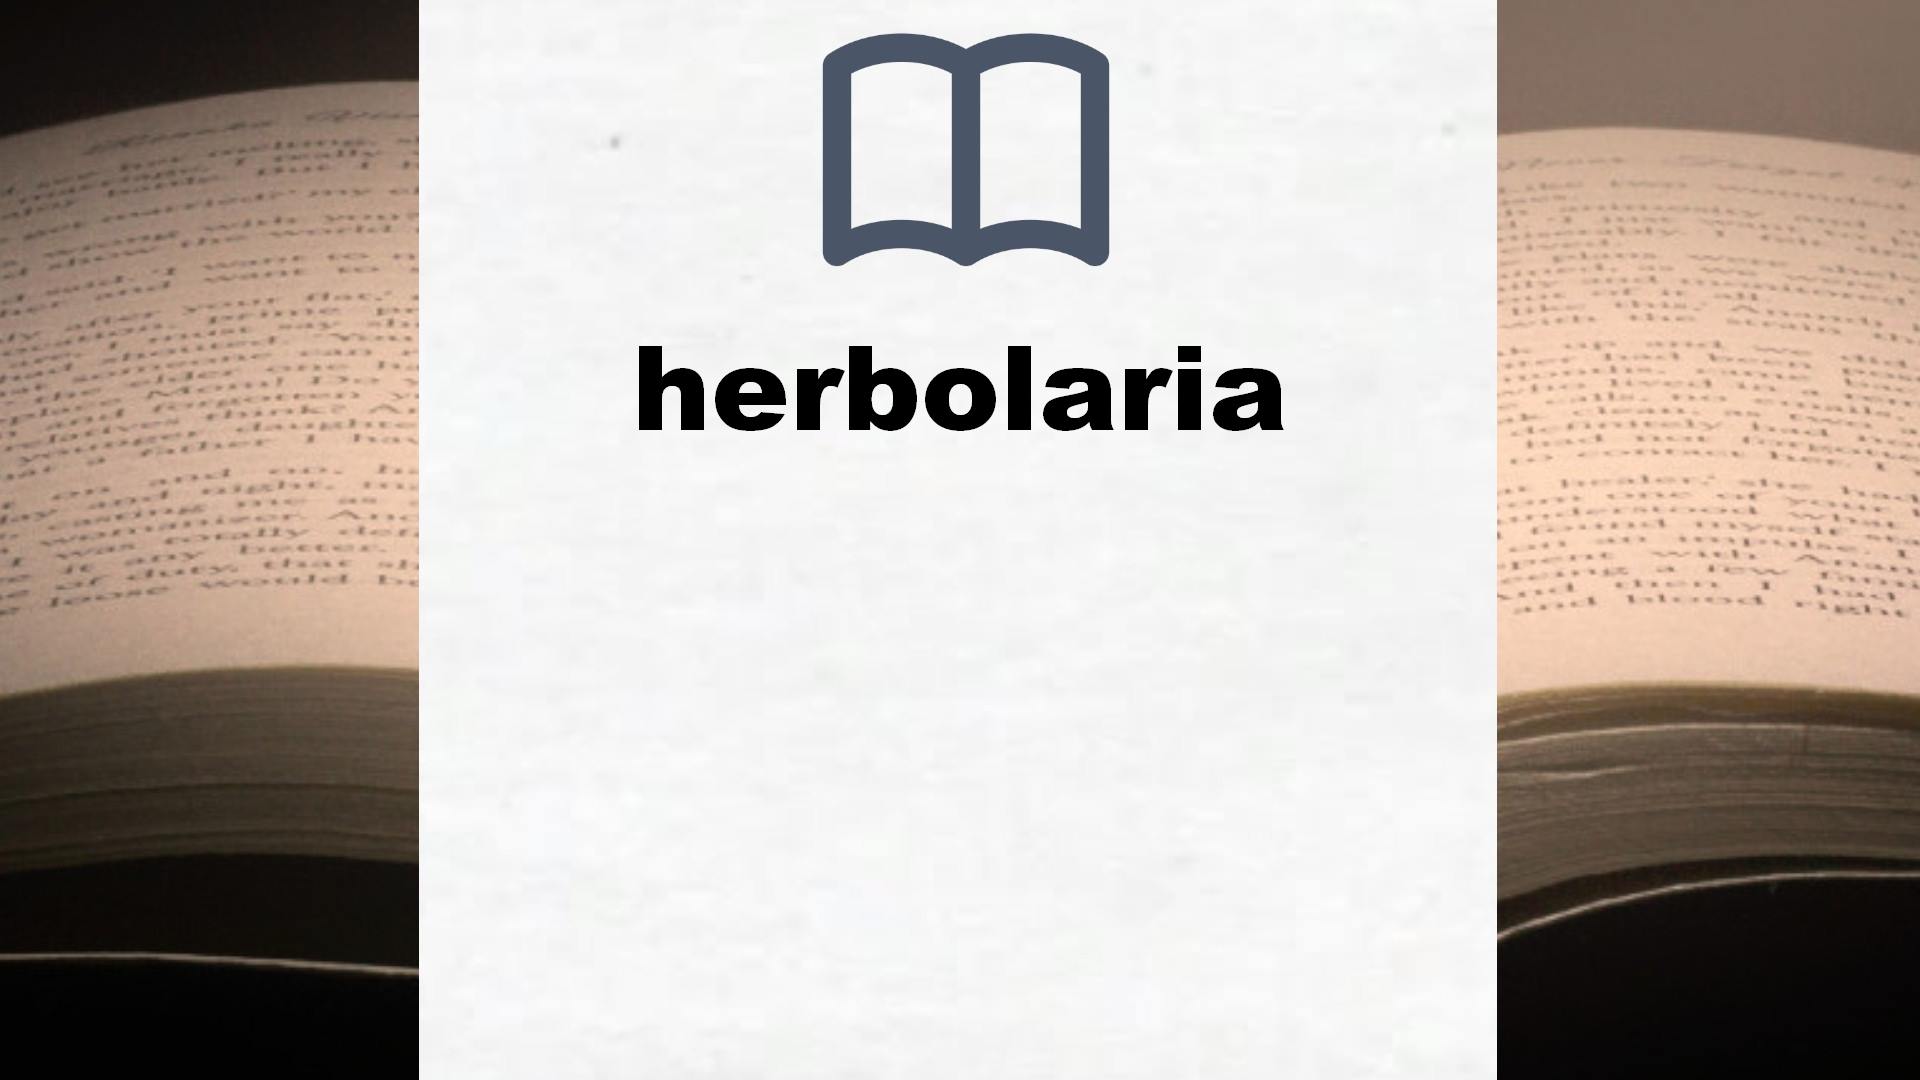 Libros sobre herbolaria